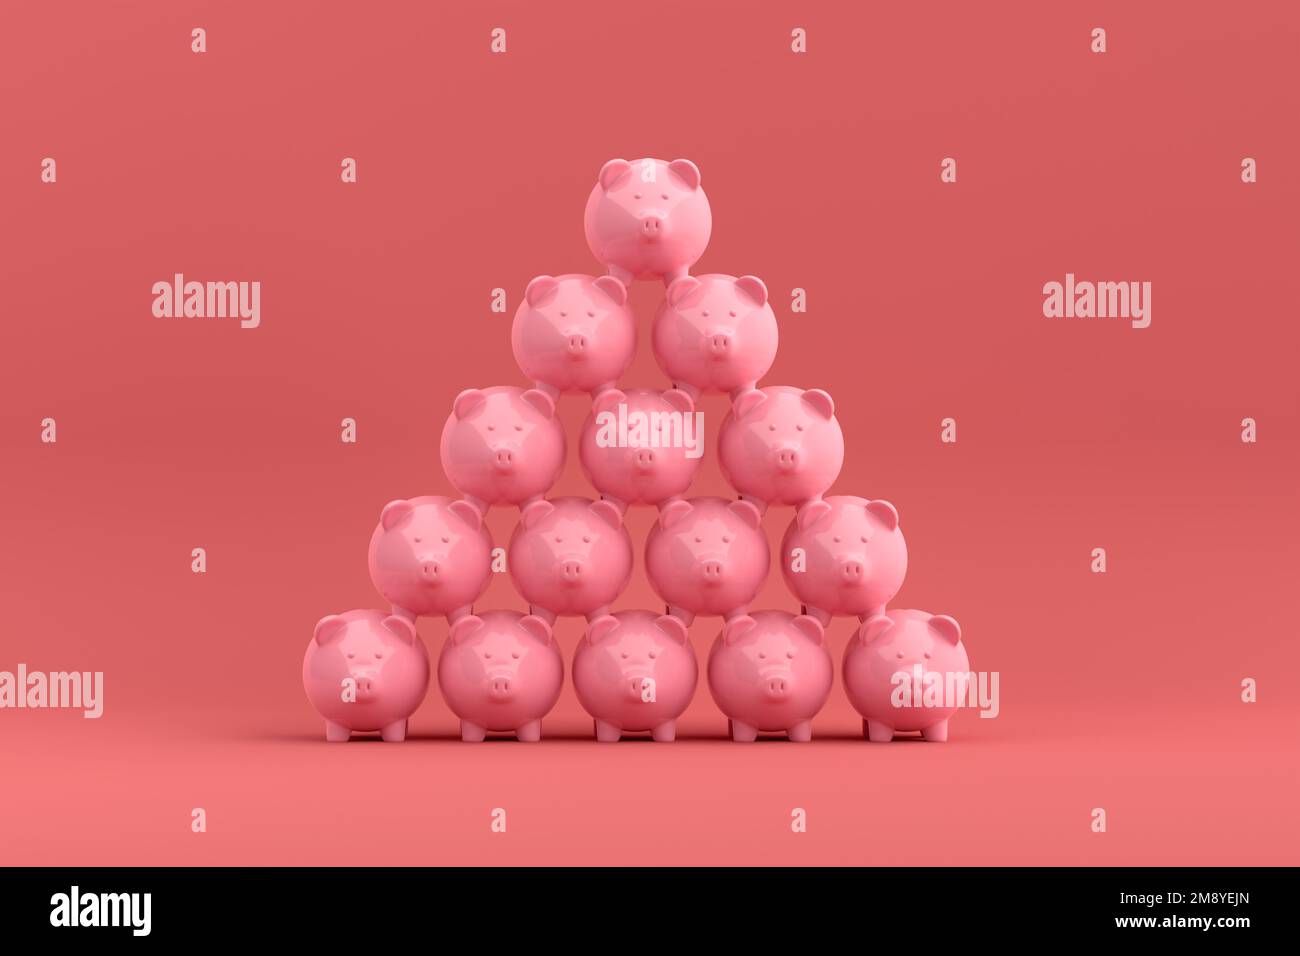 Concetto di crescita del risparmio o di accumulo di denaro. Torre piramidale di argini bianchi impilati su sfondo rosa. Rendering 3D. Foto Stock